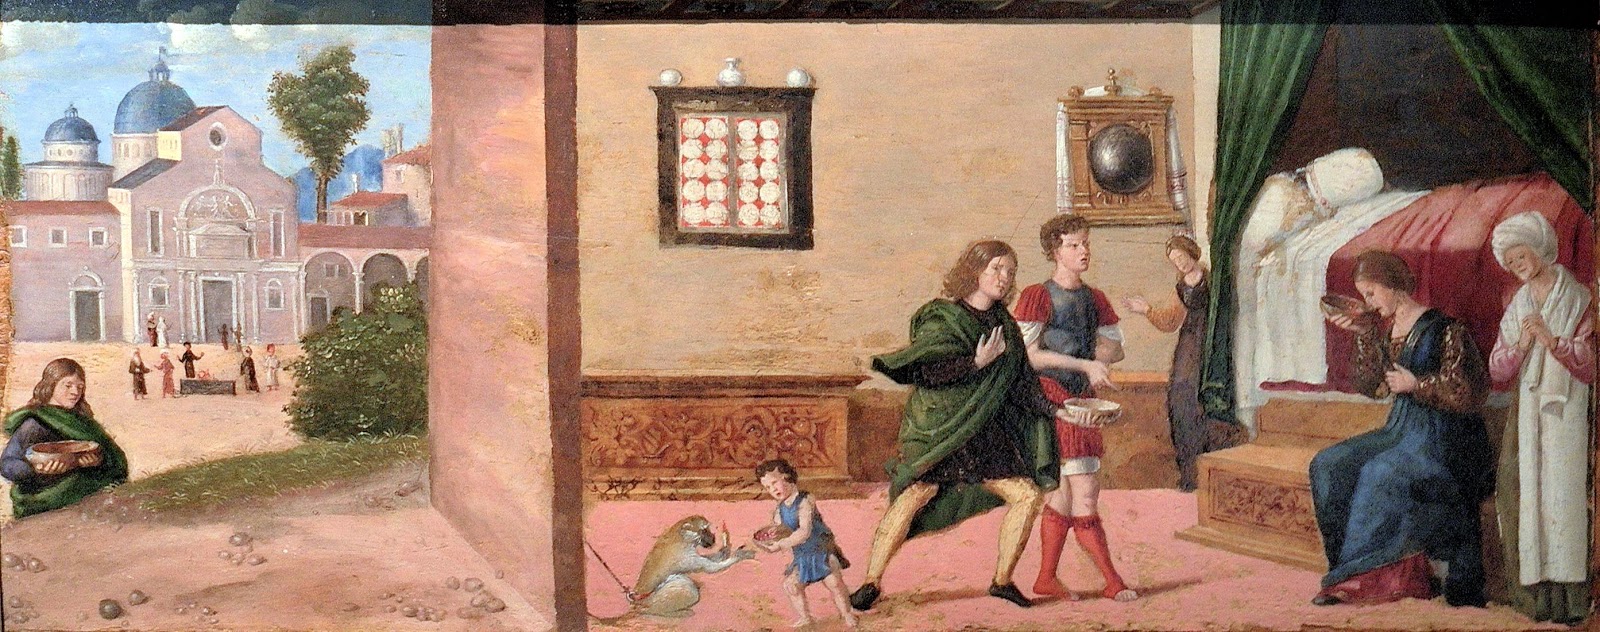 Cima+da+Conegliano-1459-1517 (40).jpg